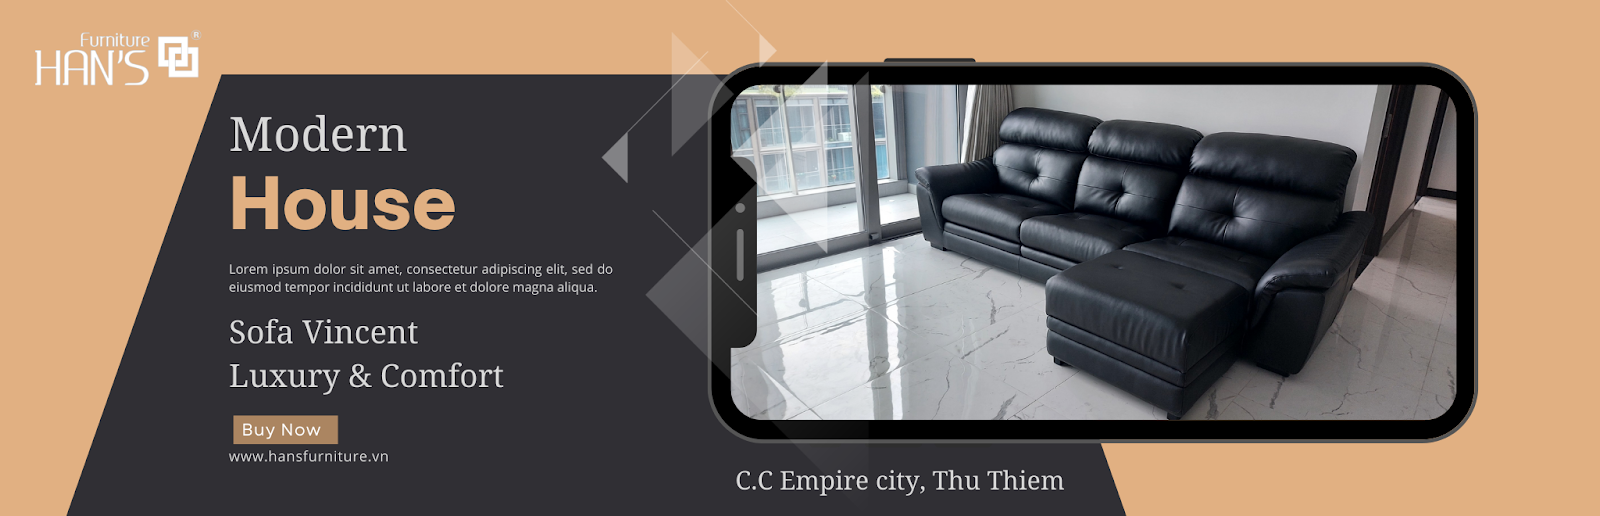 Han’s Furniture - nhà cung cấp nội thất uy tín, chất lượng cao